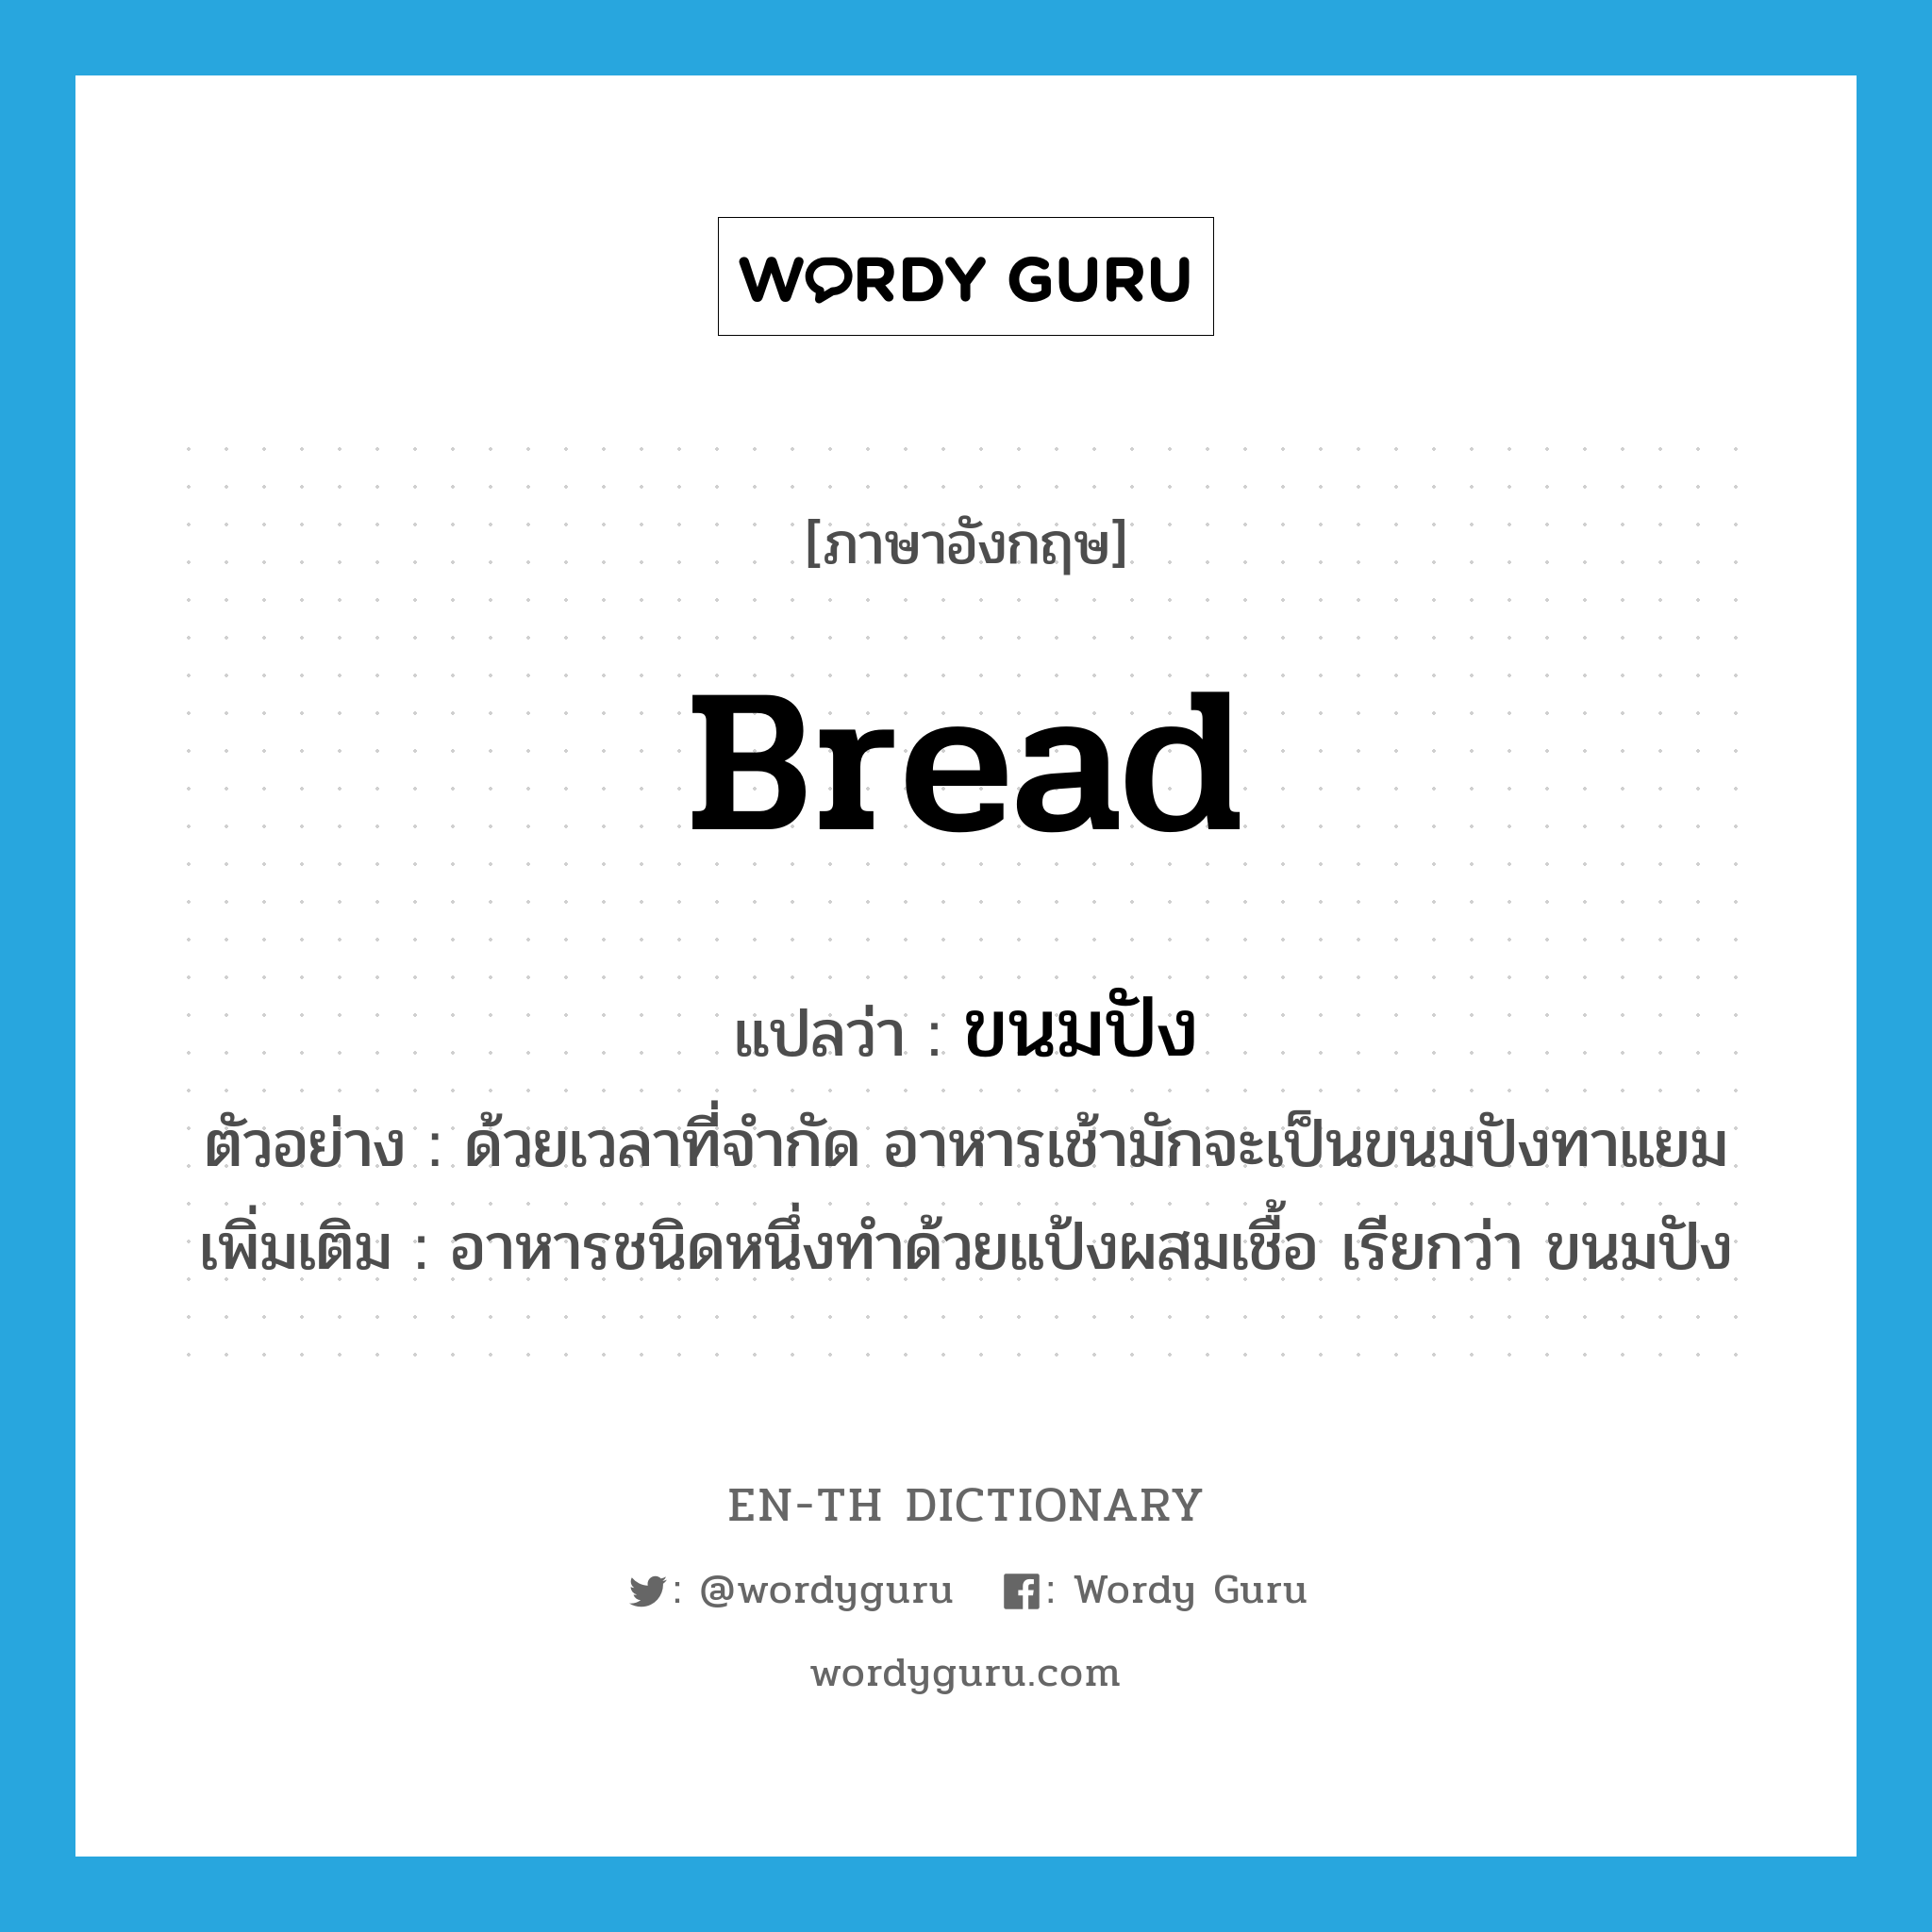 bread แปลว่า?, คำศัพท์ภาษาอังกฤษ bread แปลว่า ขนมปัง ประเภท N ตัวอย่าง ด้วยเวลาที่จำกัด อาหารเช้ามักจะเป็นขนมปังทาแยม เพิ่มเติม อาหารชนิดหนึ่งทำด้วยแป้งผสมเชื้อ เรียกว่า ขนมปัง หมวด N